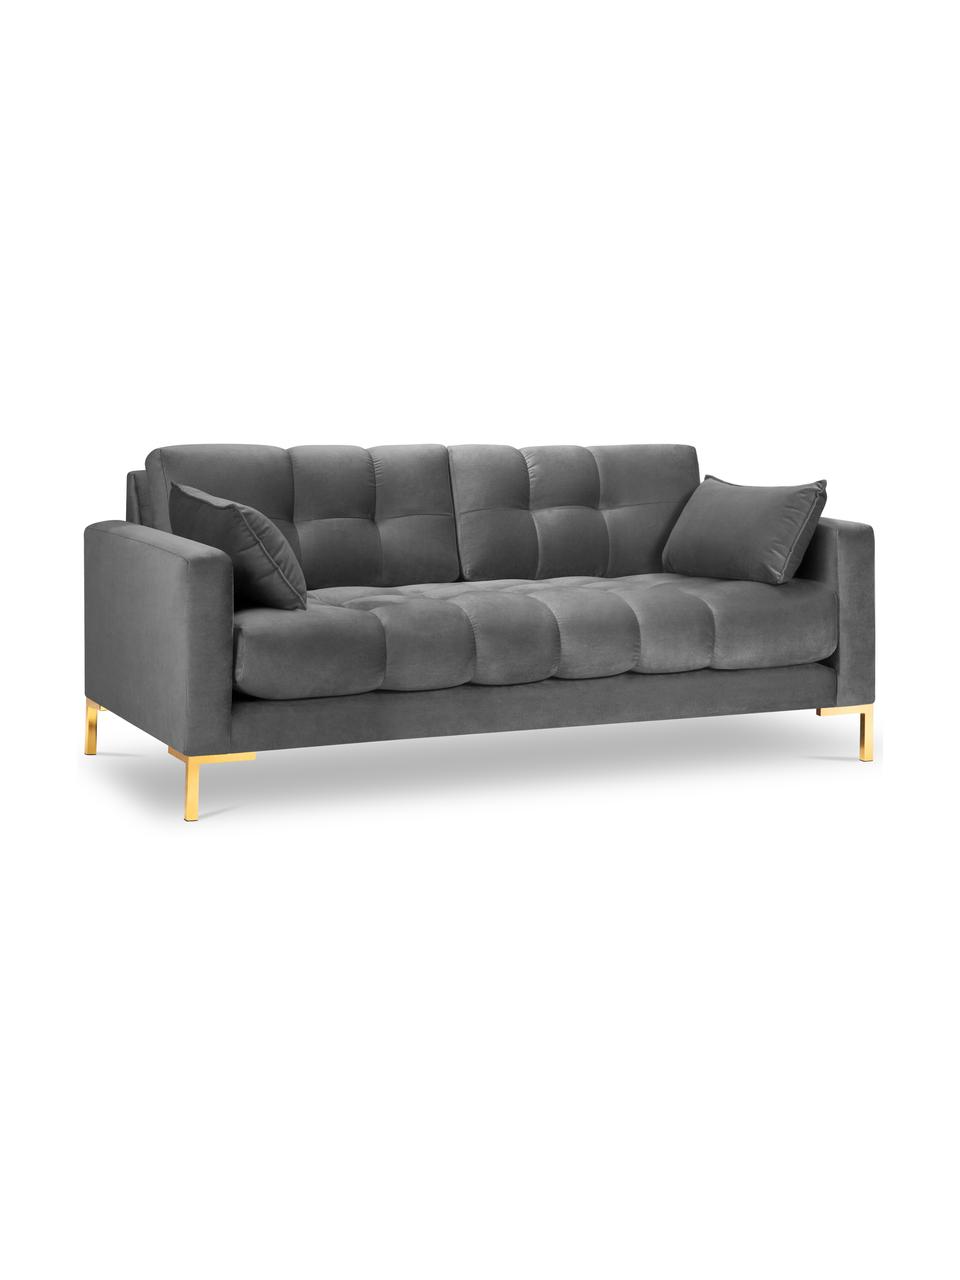 Sofa z aksamitu Mamaia (2-osobowa), Tapicerka: 100% aksamit poliestrowy , Nogi: metal powlekany, Jasnoszary aksamit, S 152 x G 92 cm